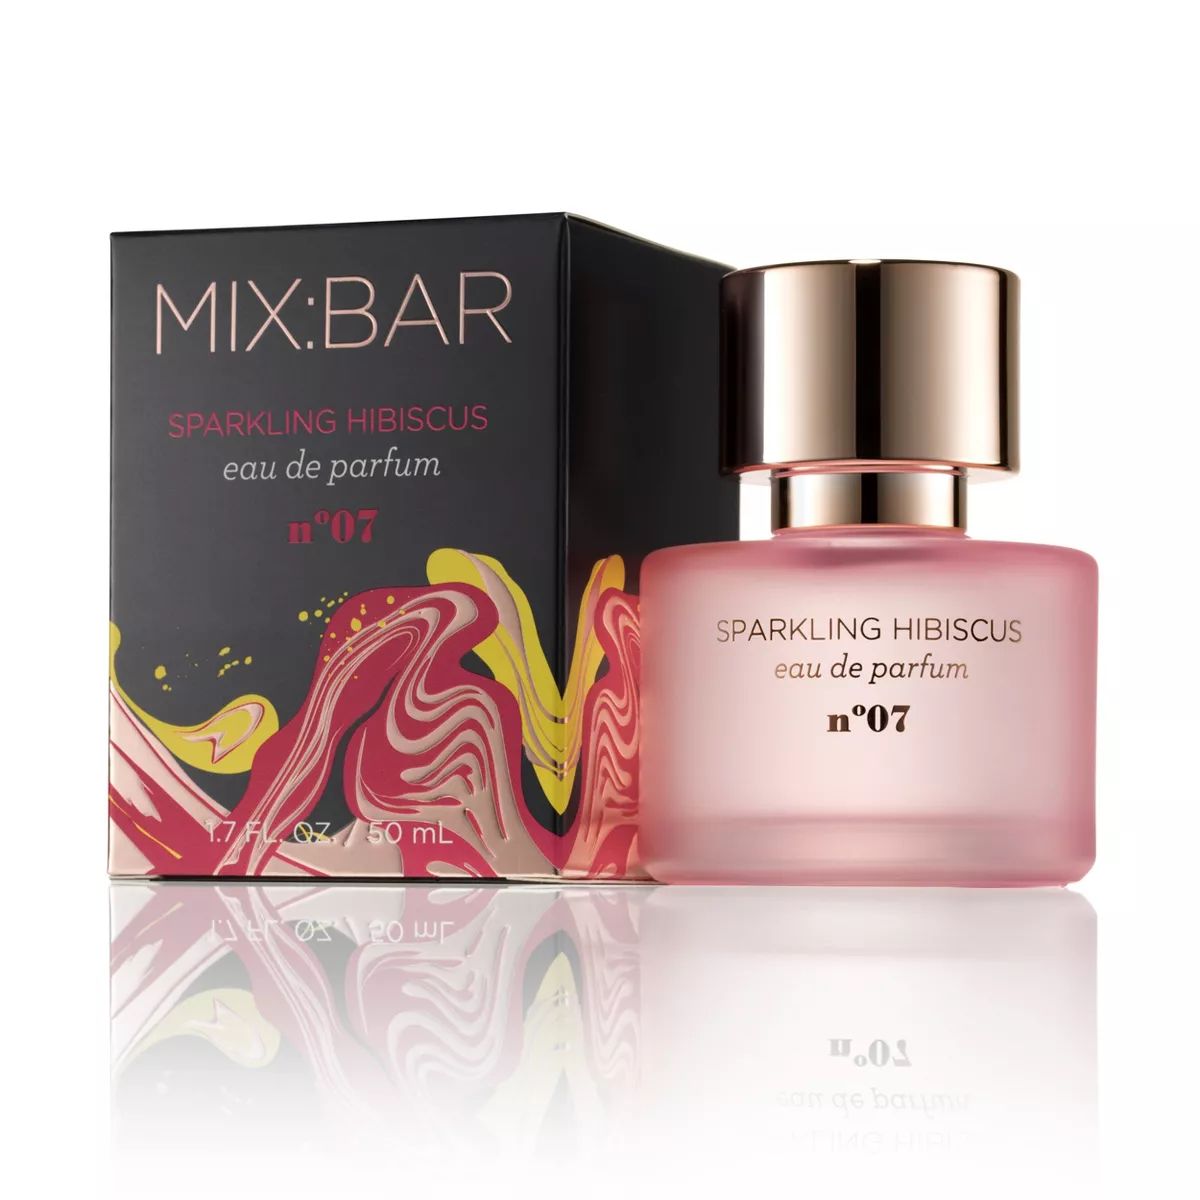 MIX:BAR Eau de Parfum for Women - Sparkling Hibiscus Fragrance - 1.7 fl oz | Target